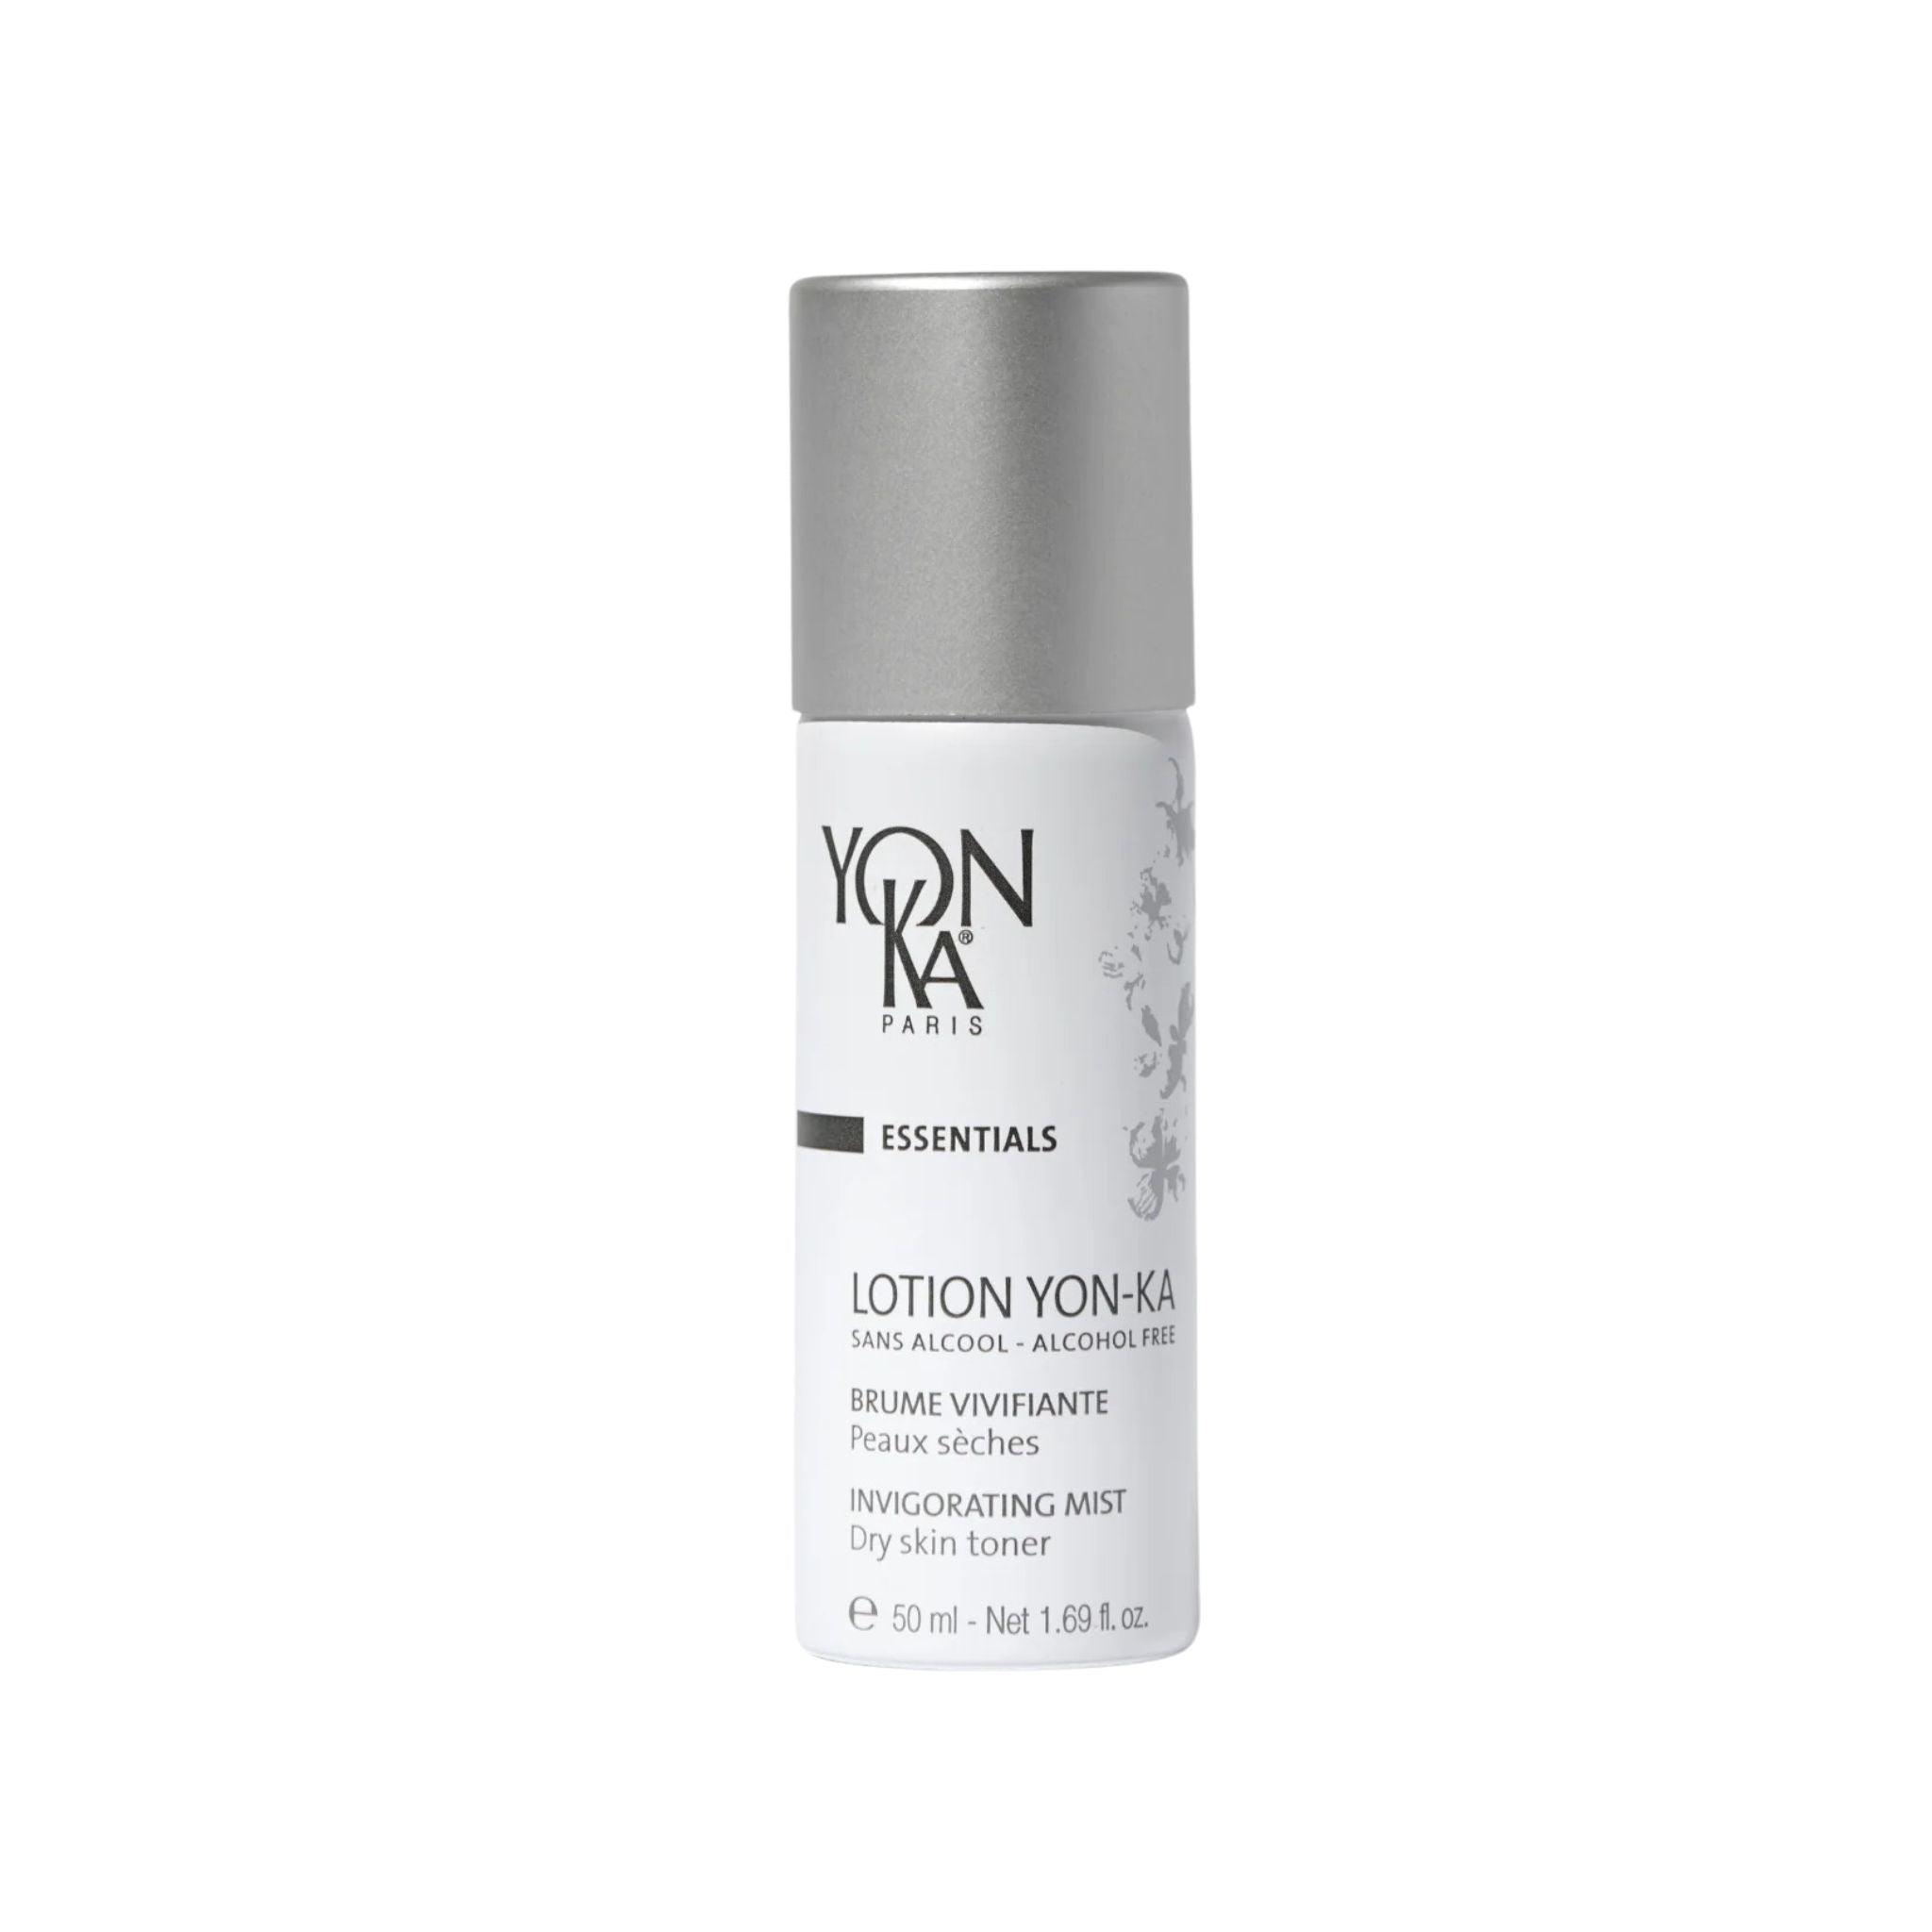 YonKa Lotion Yon-Ka Mist Dry Skin - Travel Size - The Beauty House Shop